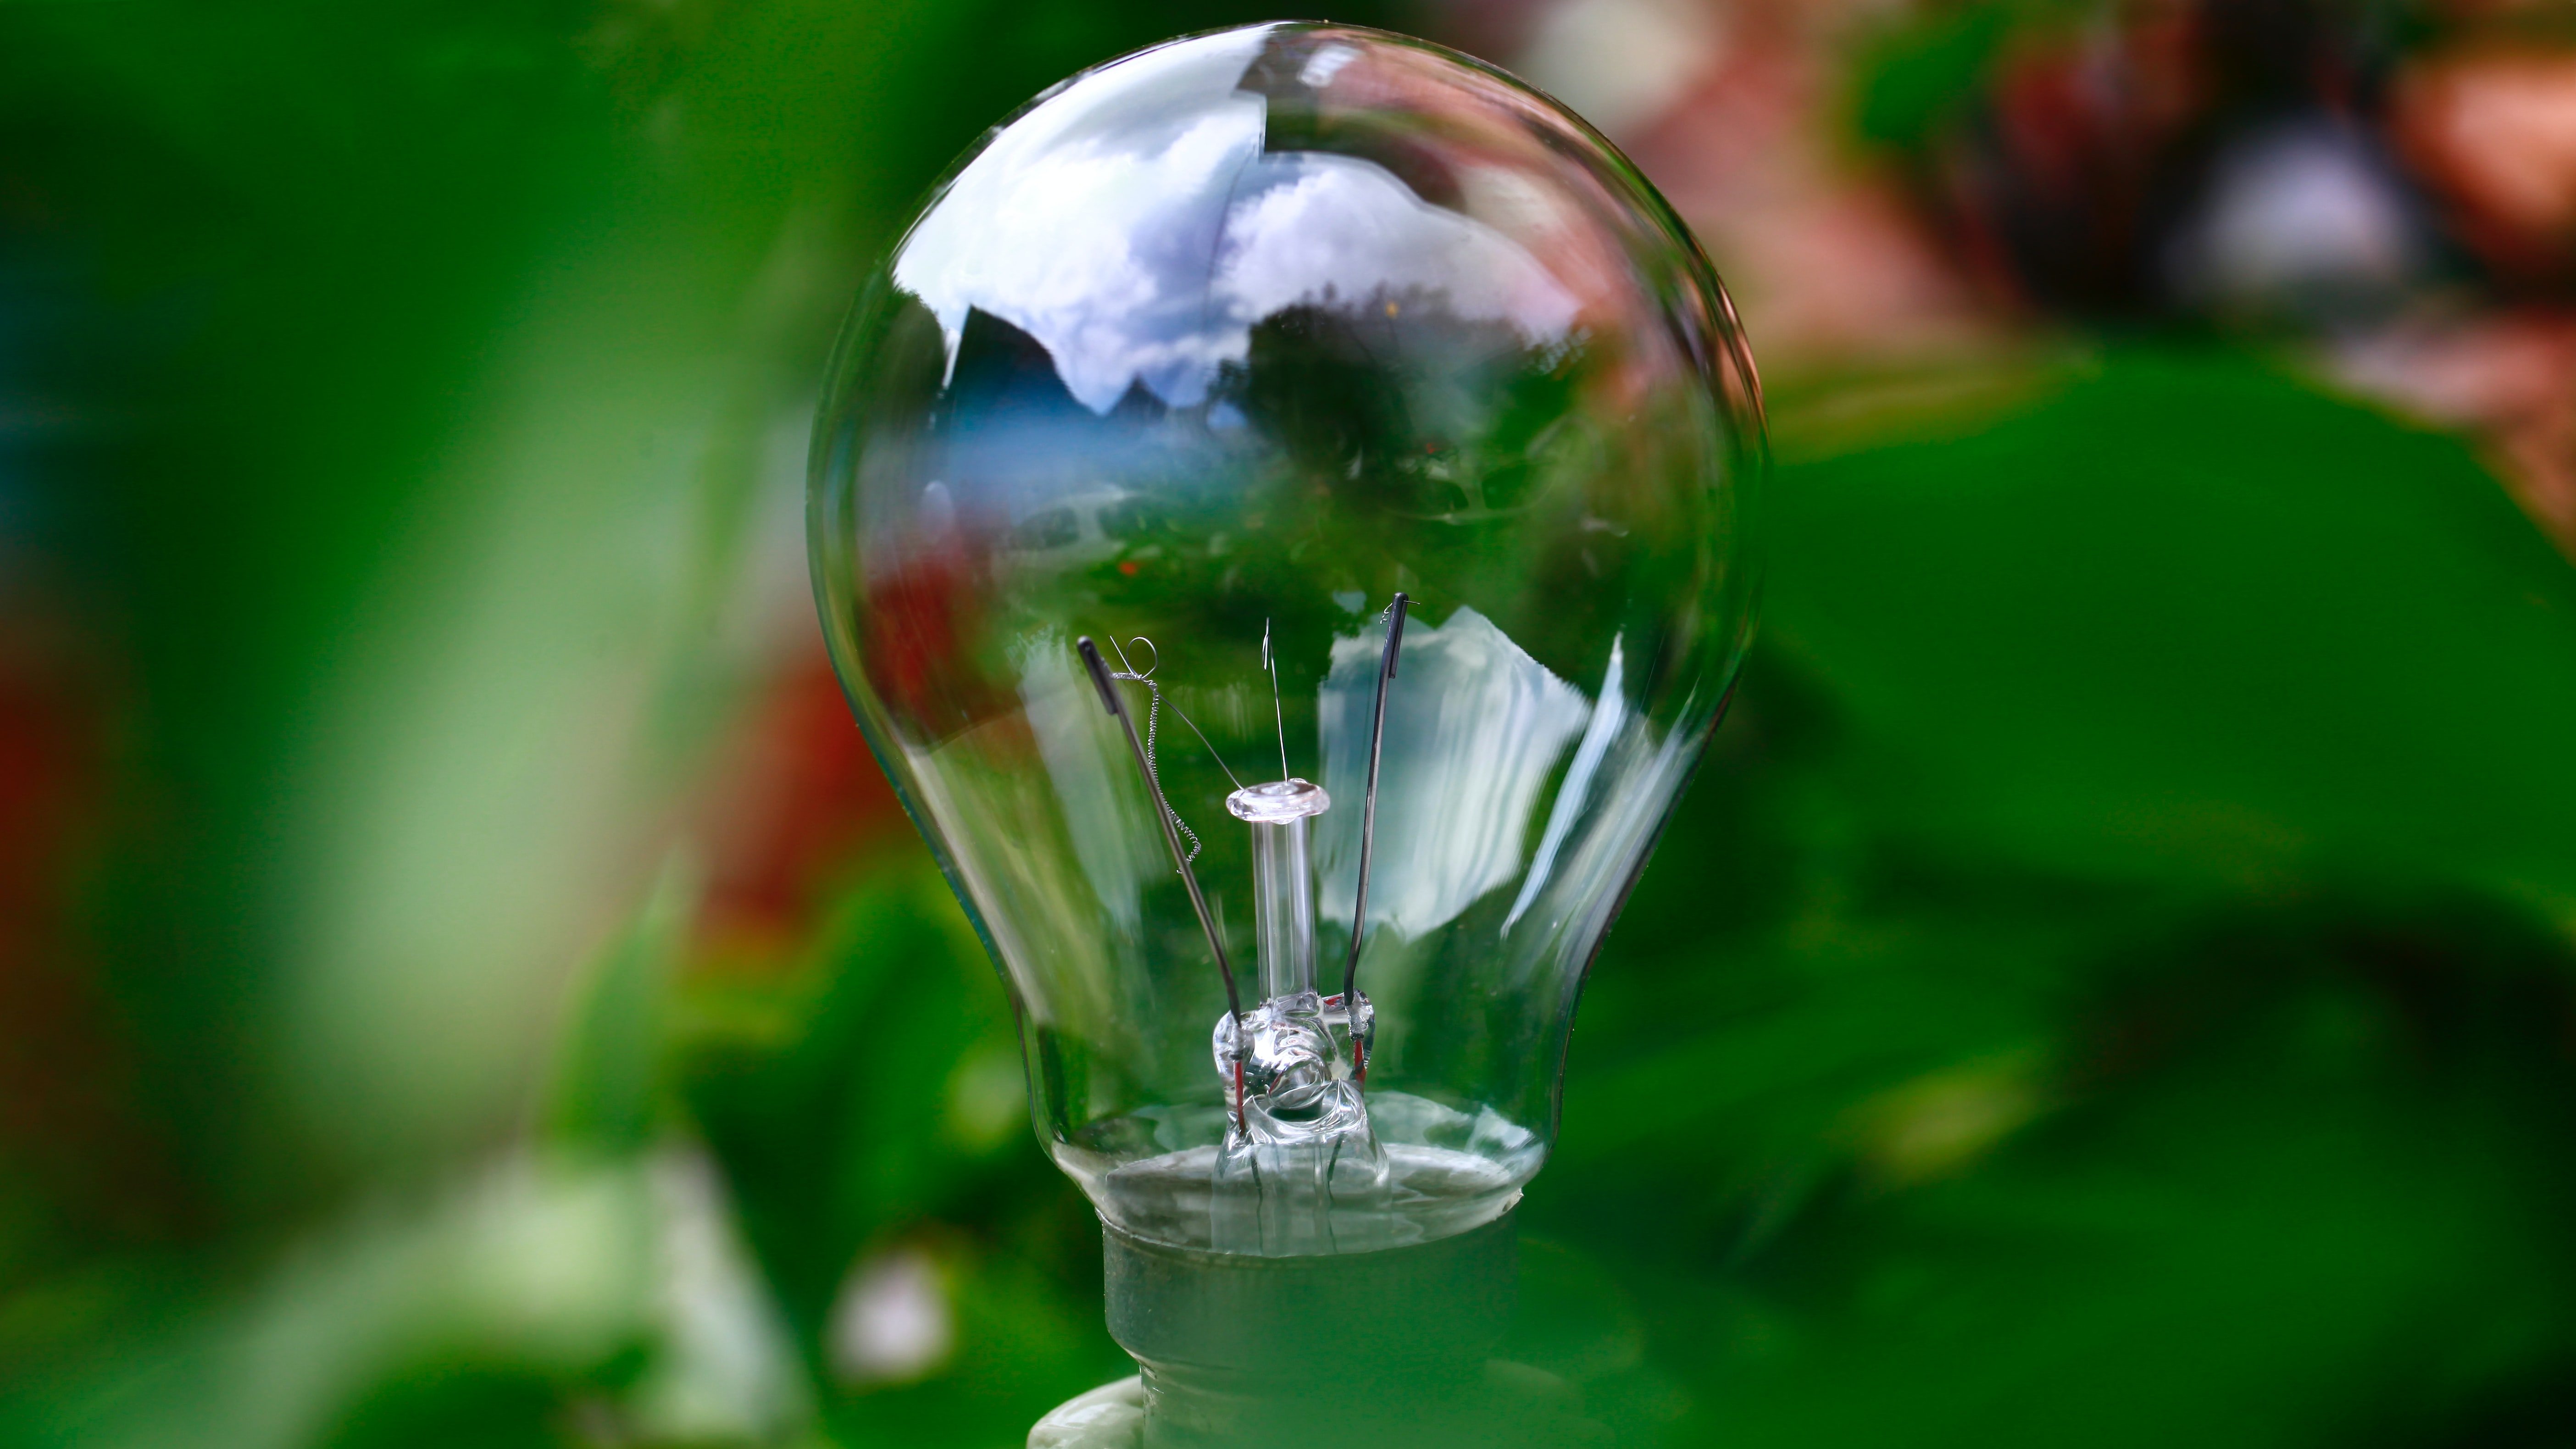 lightbulb representing ideas for greener living